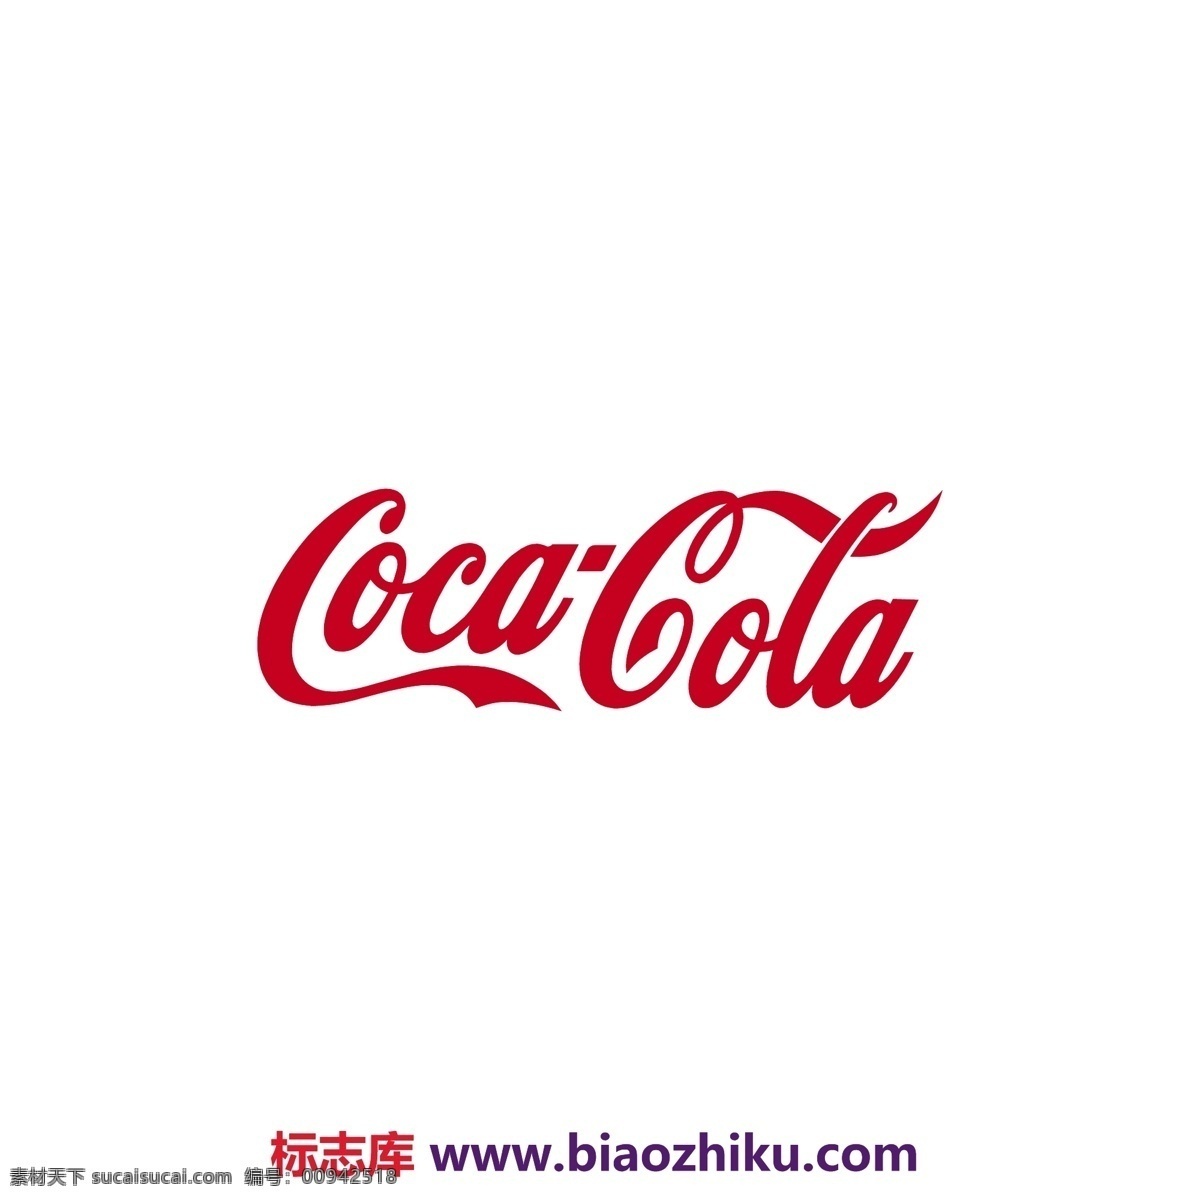 cocacola logo大全 logo 设计欣赏 商业矢量 矢量下载 可口可乐 标志设计 欣赏 网页矢量 矢量图 其他矢量图